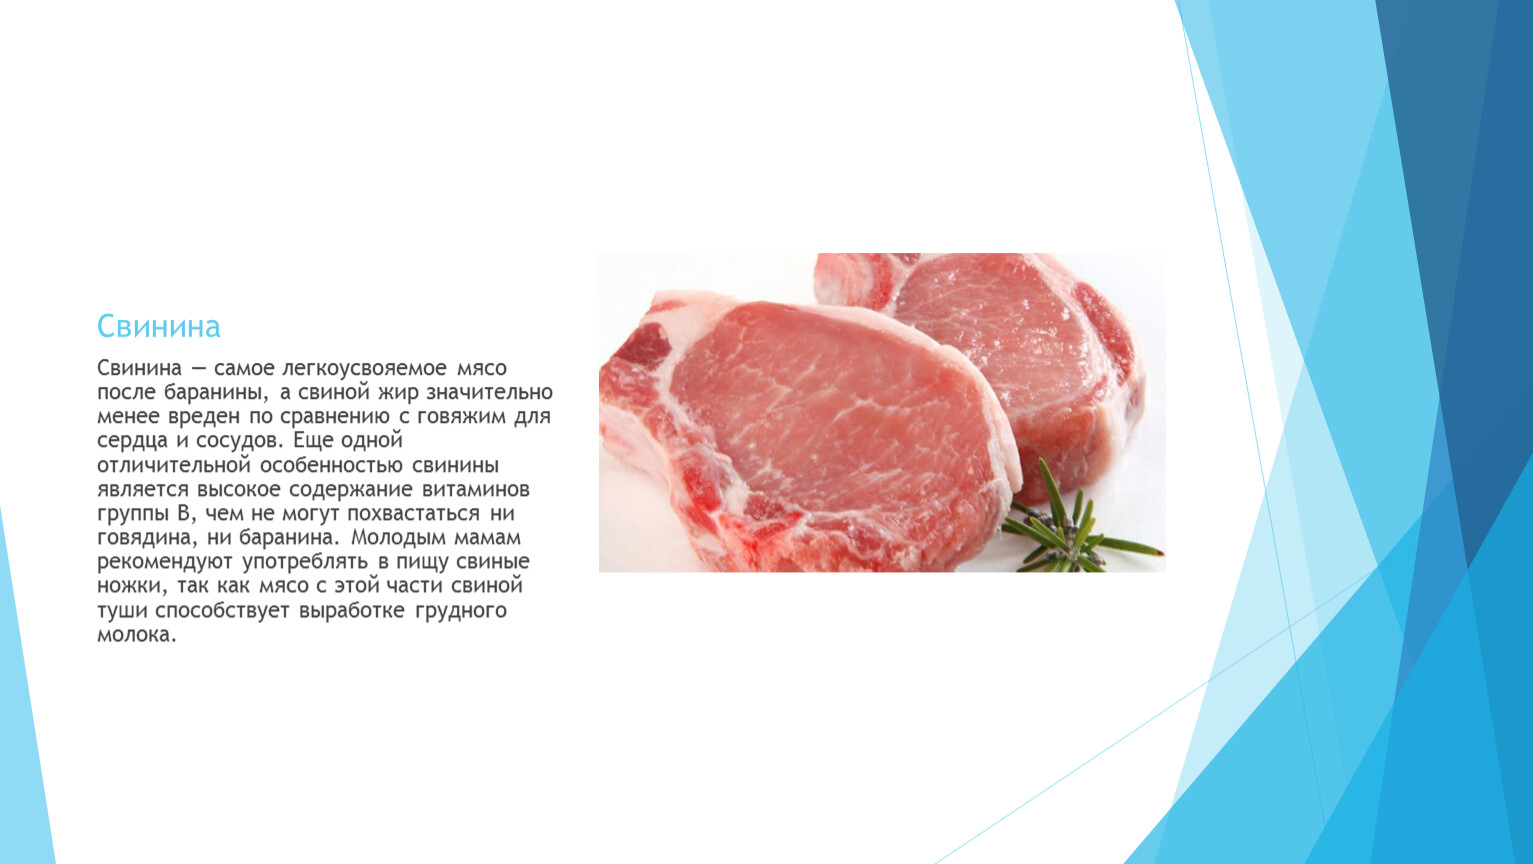 Свинина вареная: бжу (содержание белков, жиров, углеводов), калорийность, питательная ценность и польза